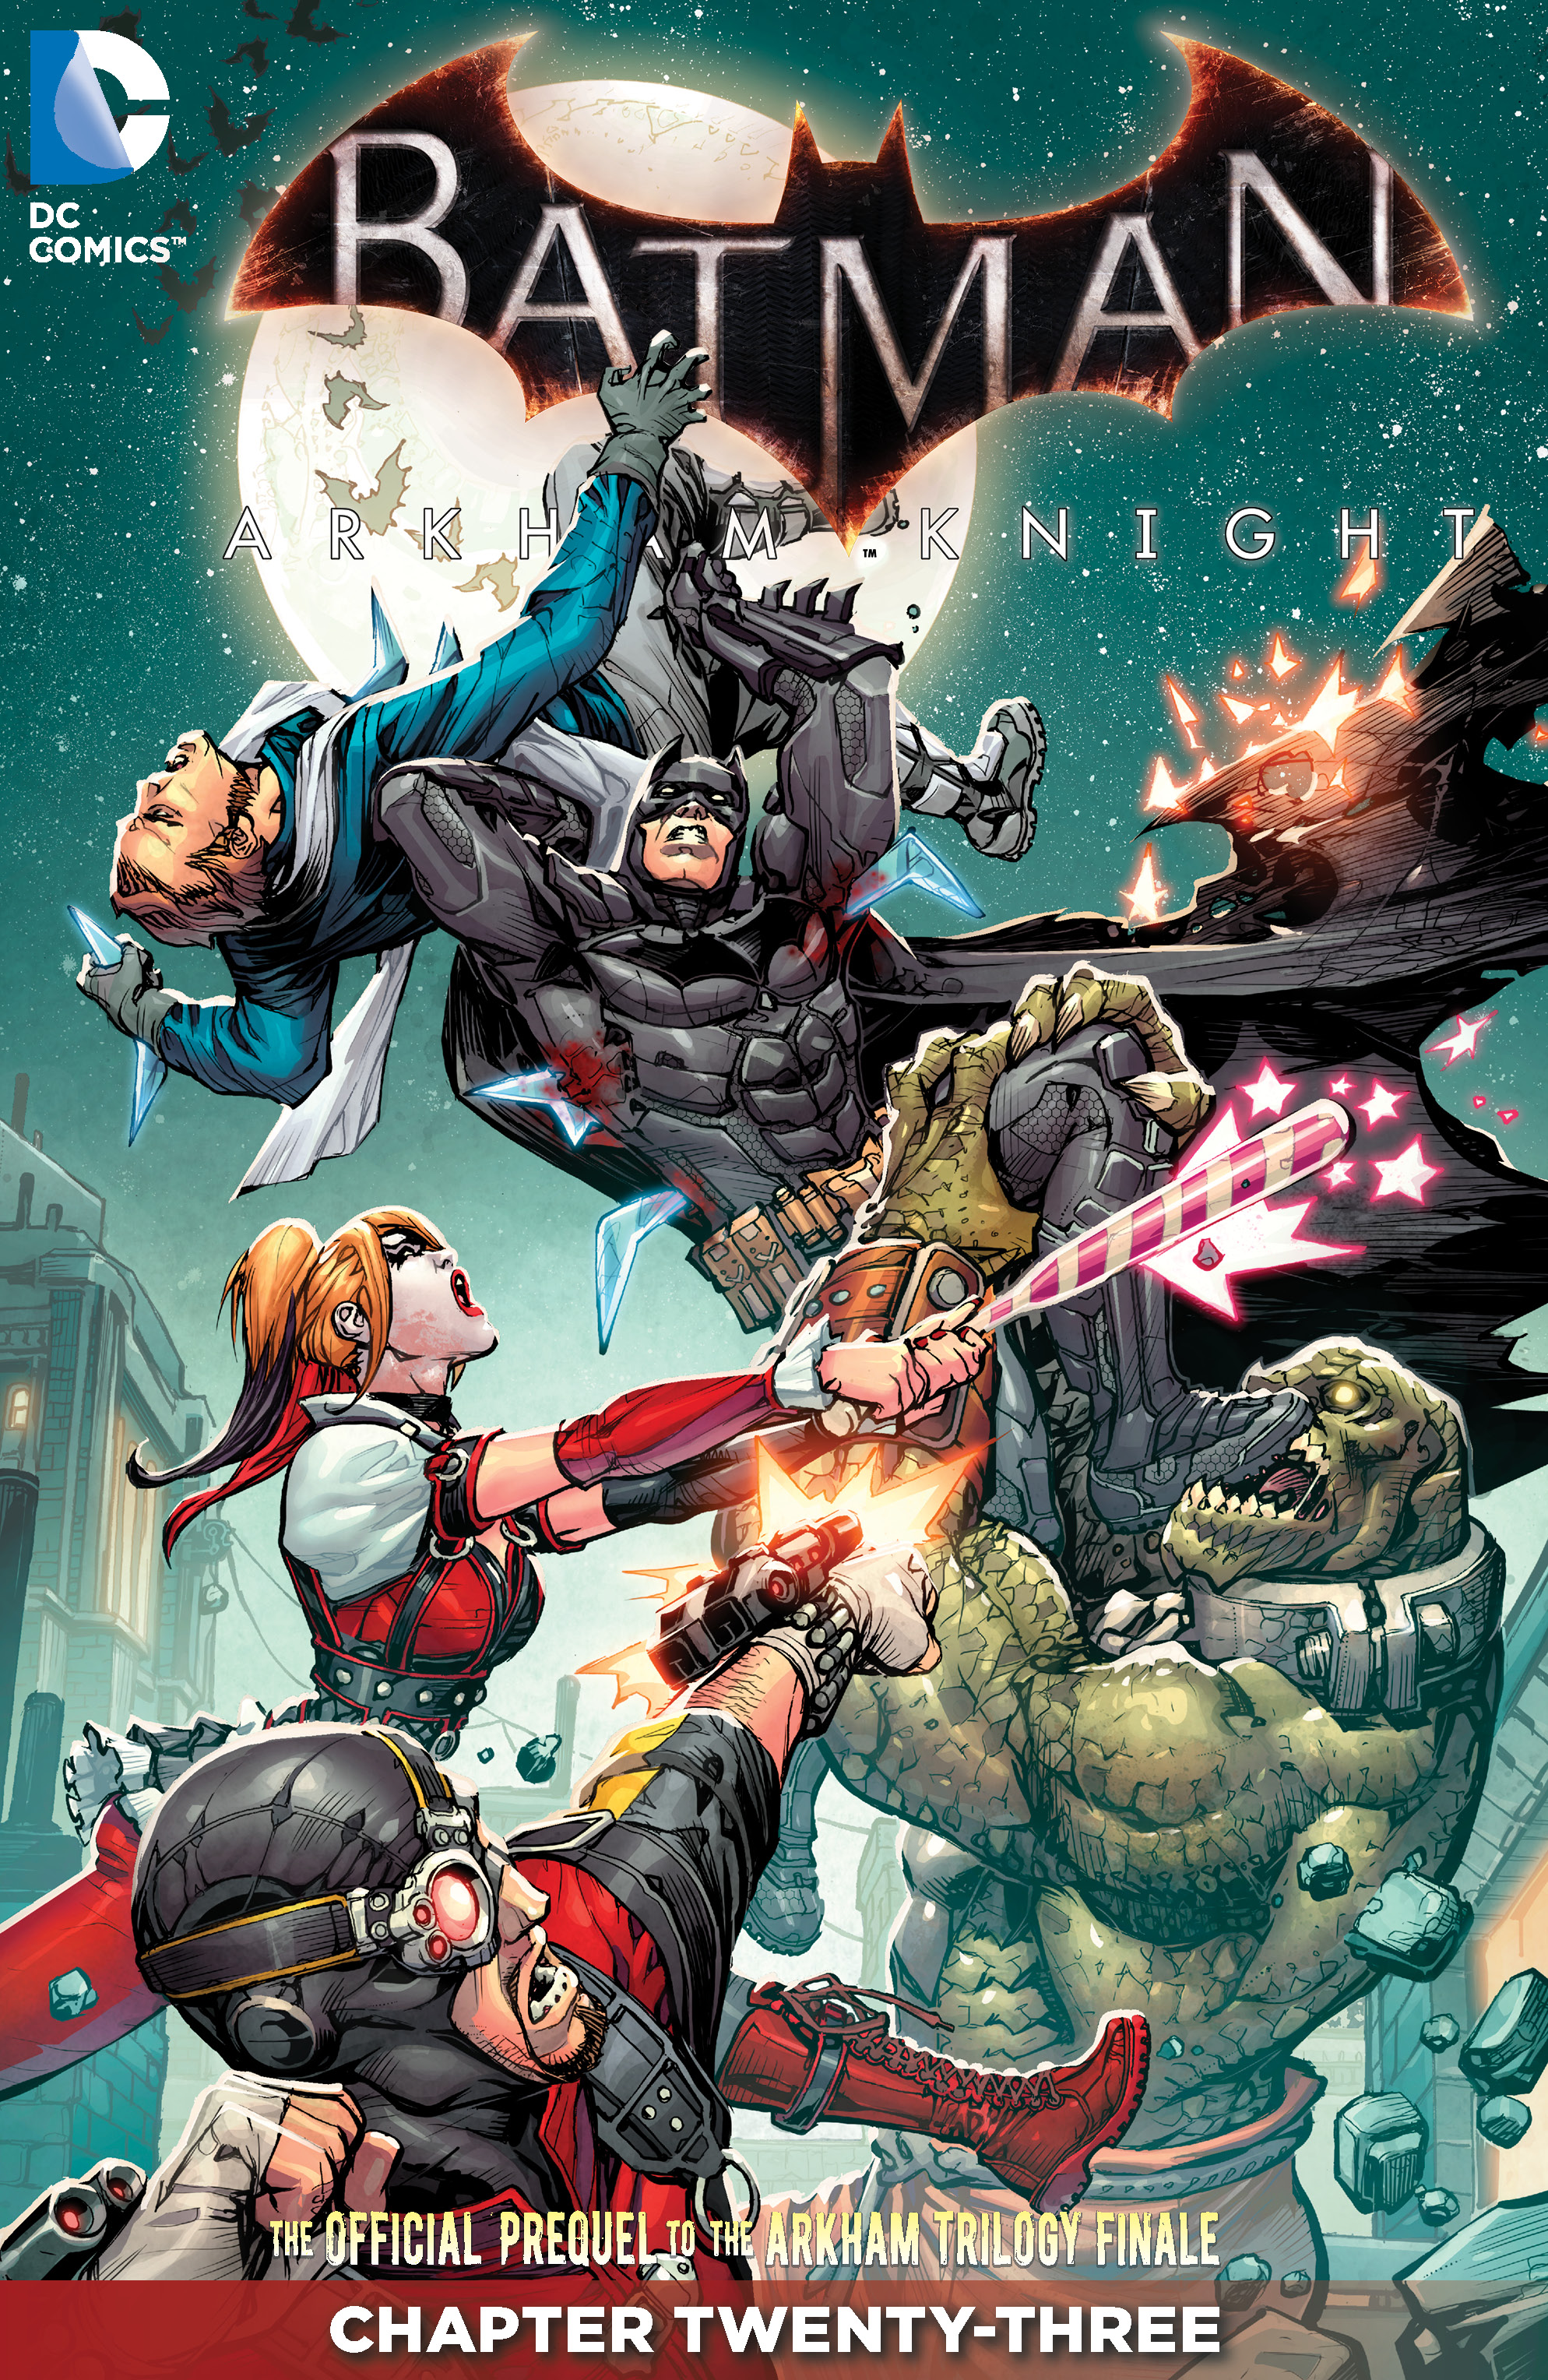 Batman: Arkham Knight #23 preview images